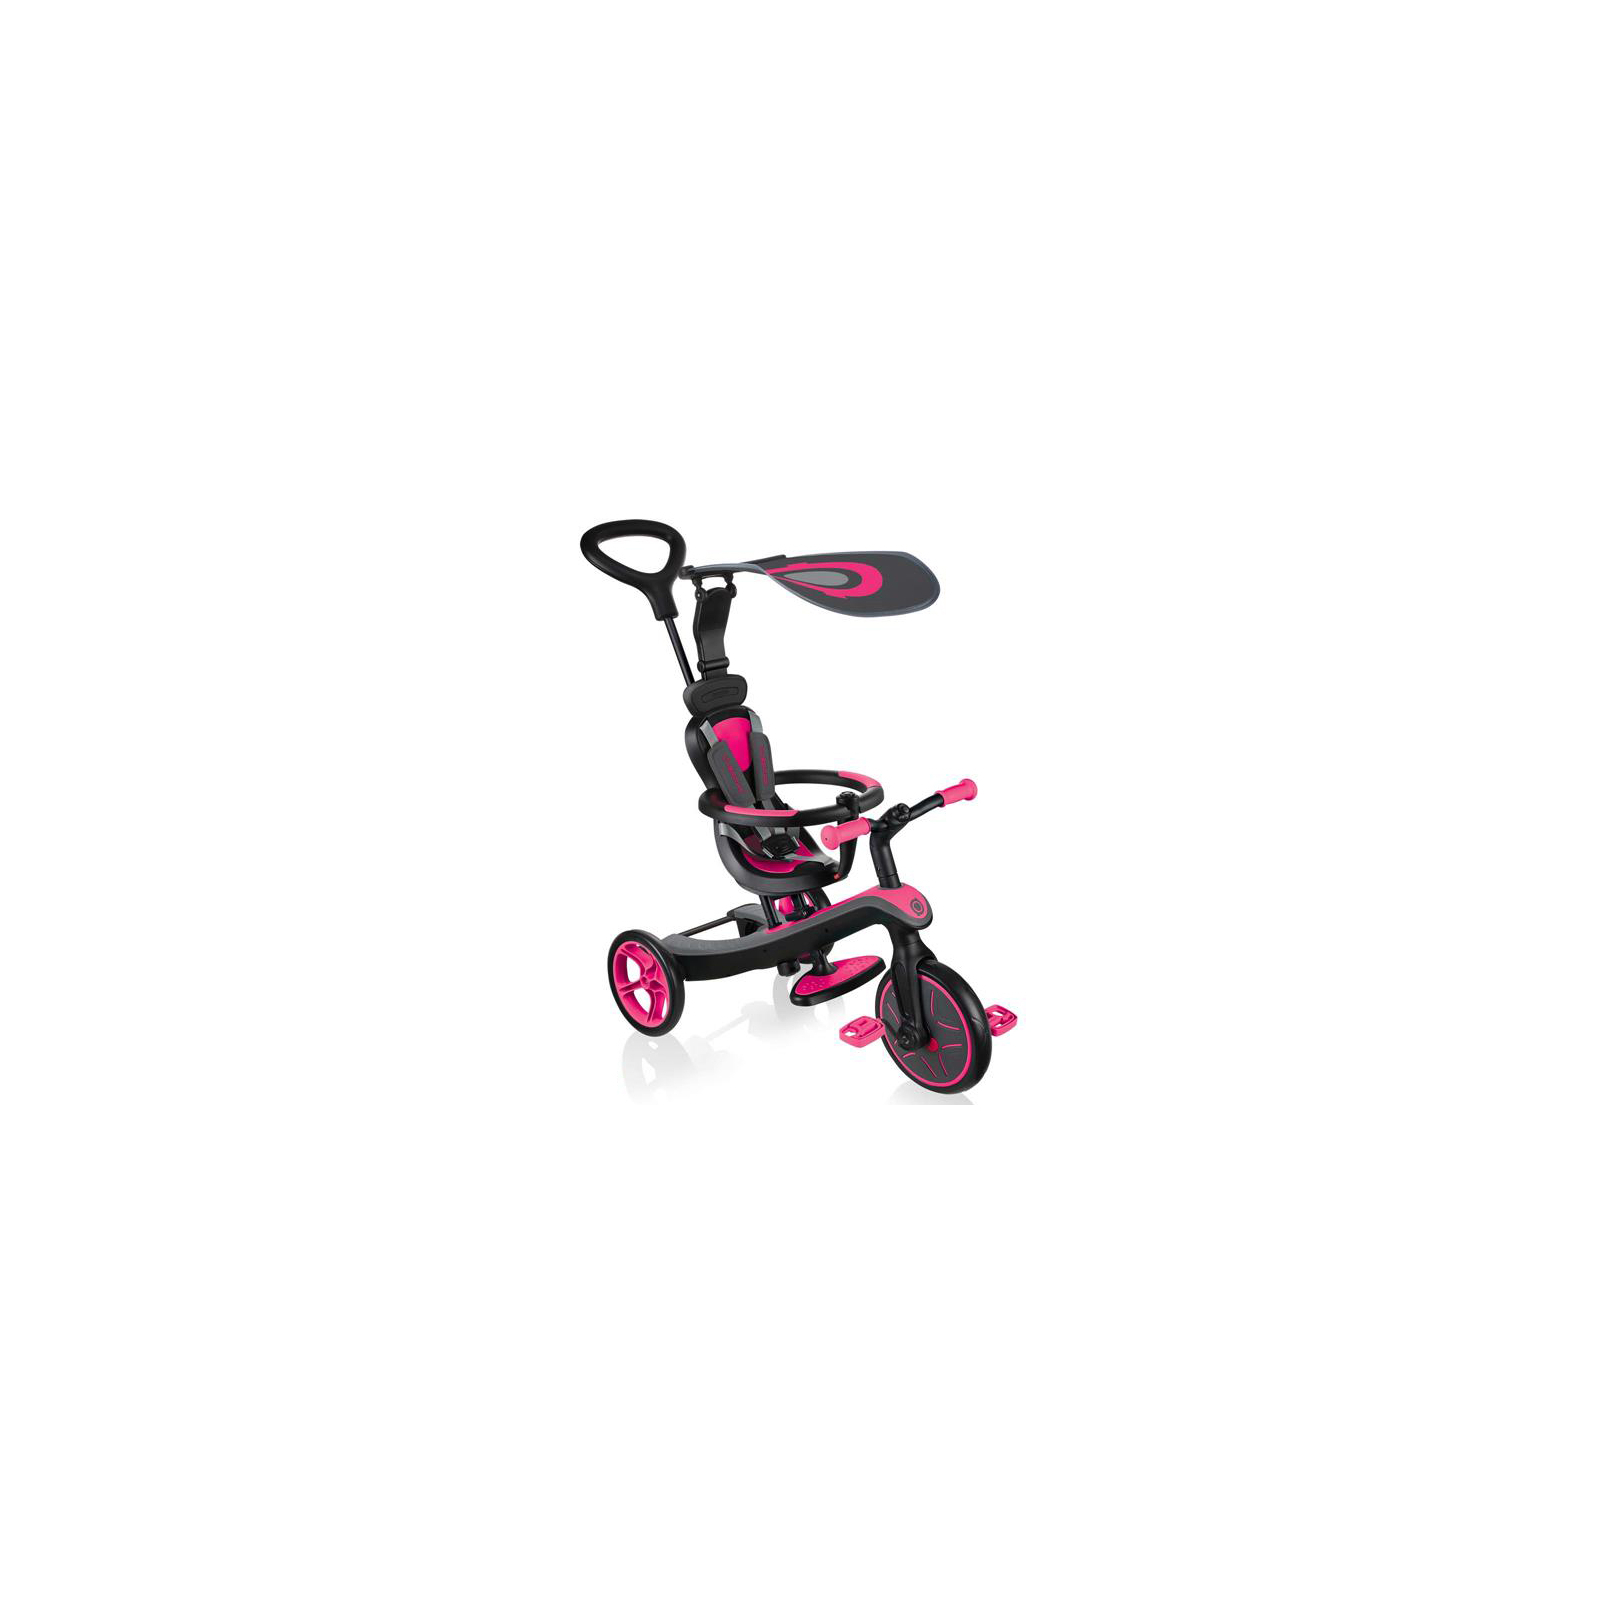 Детский велосипед Globber 4 в 1 Explorer Trike Red (632-102-3)